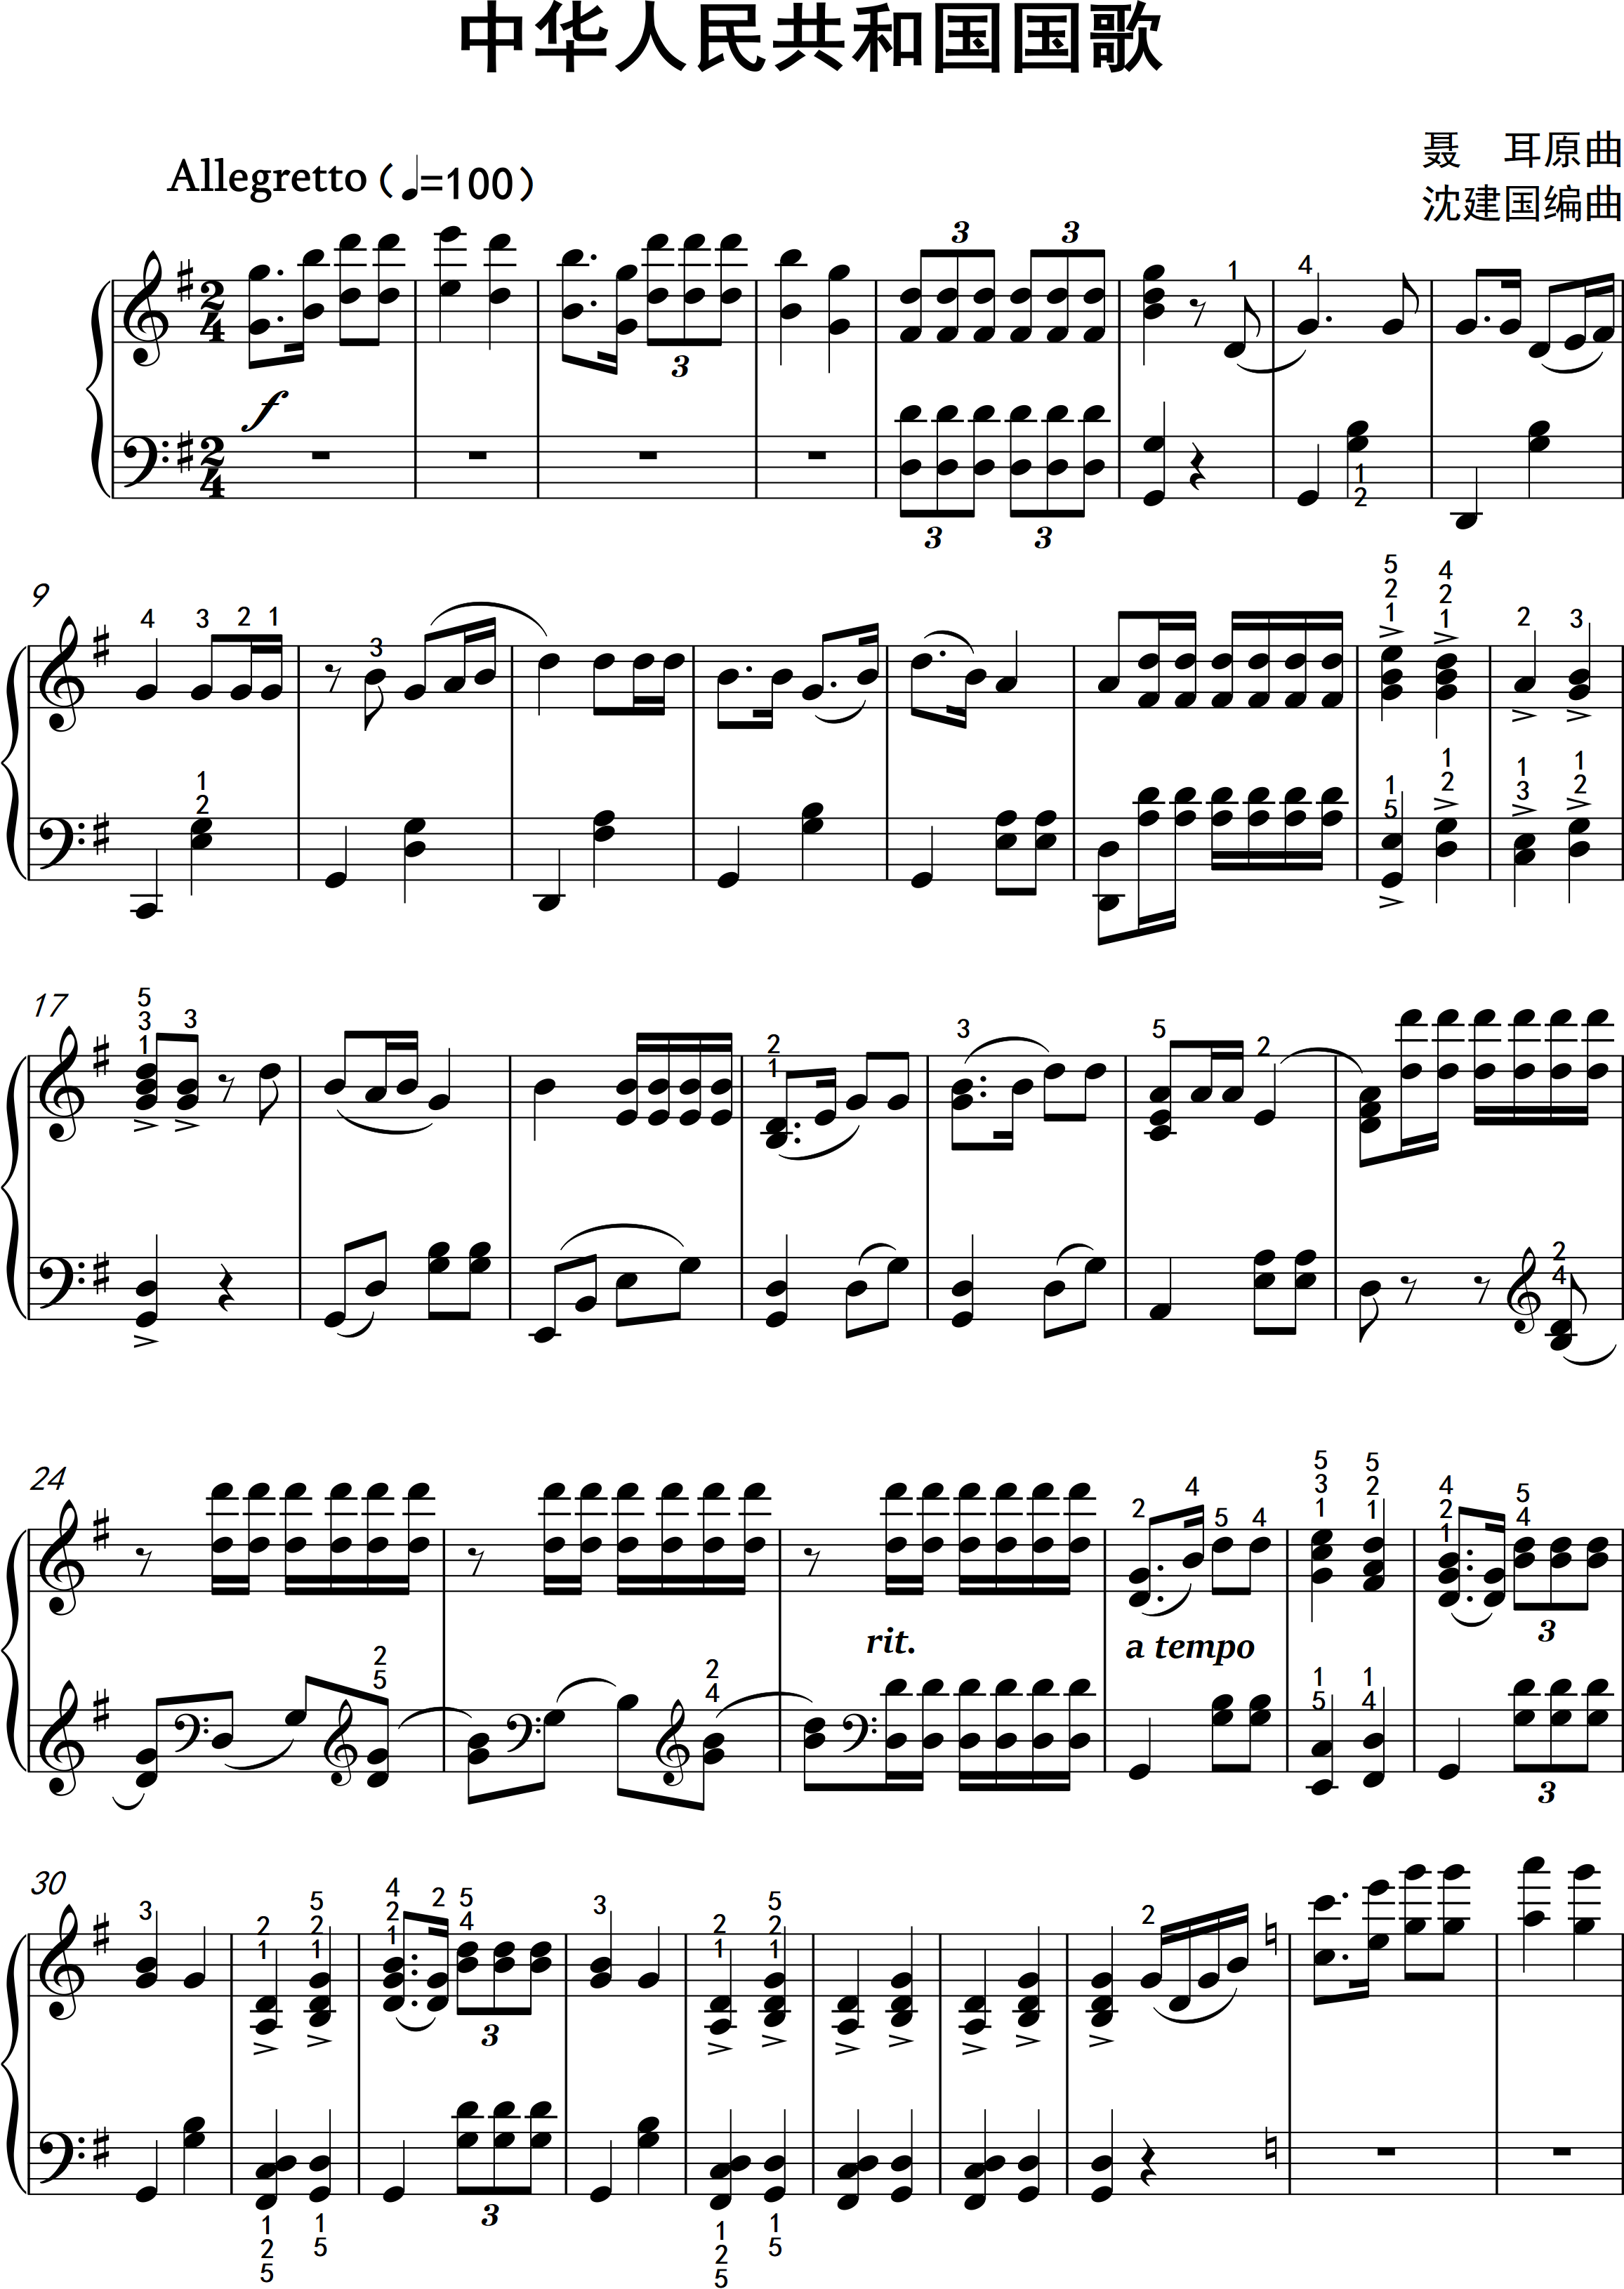 钢琴曲《国歌》-1.png